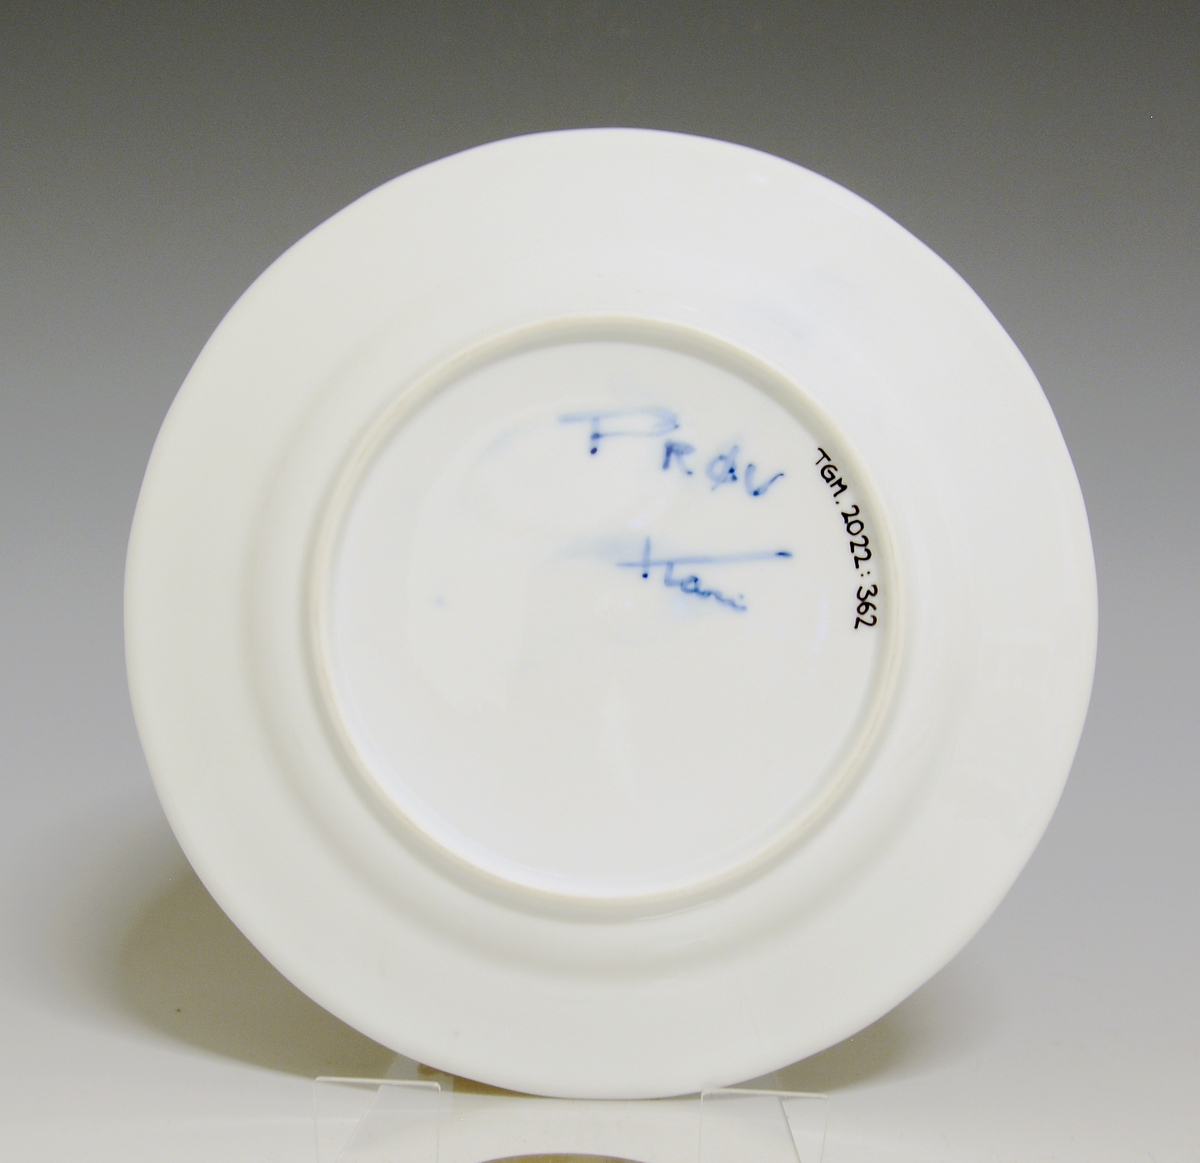 Liten tallerken av porselen. Hvit glasur. Håndmalt underglasurdekor i blått på fanen 
Modell: Victoria, 1800